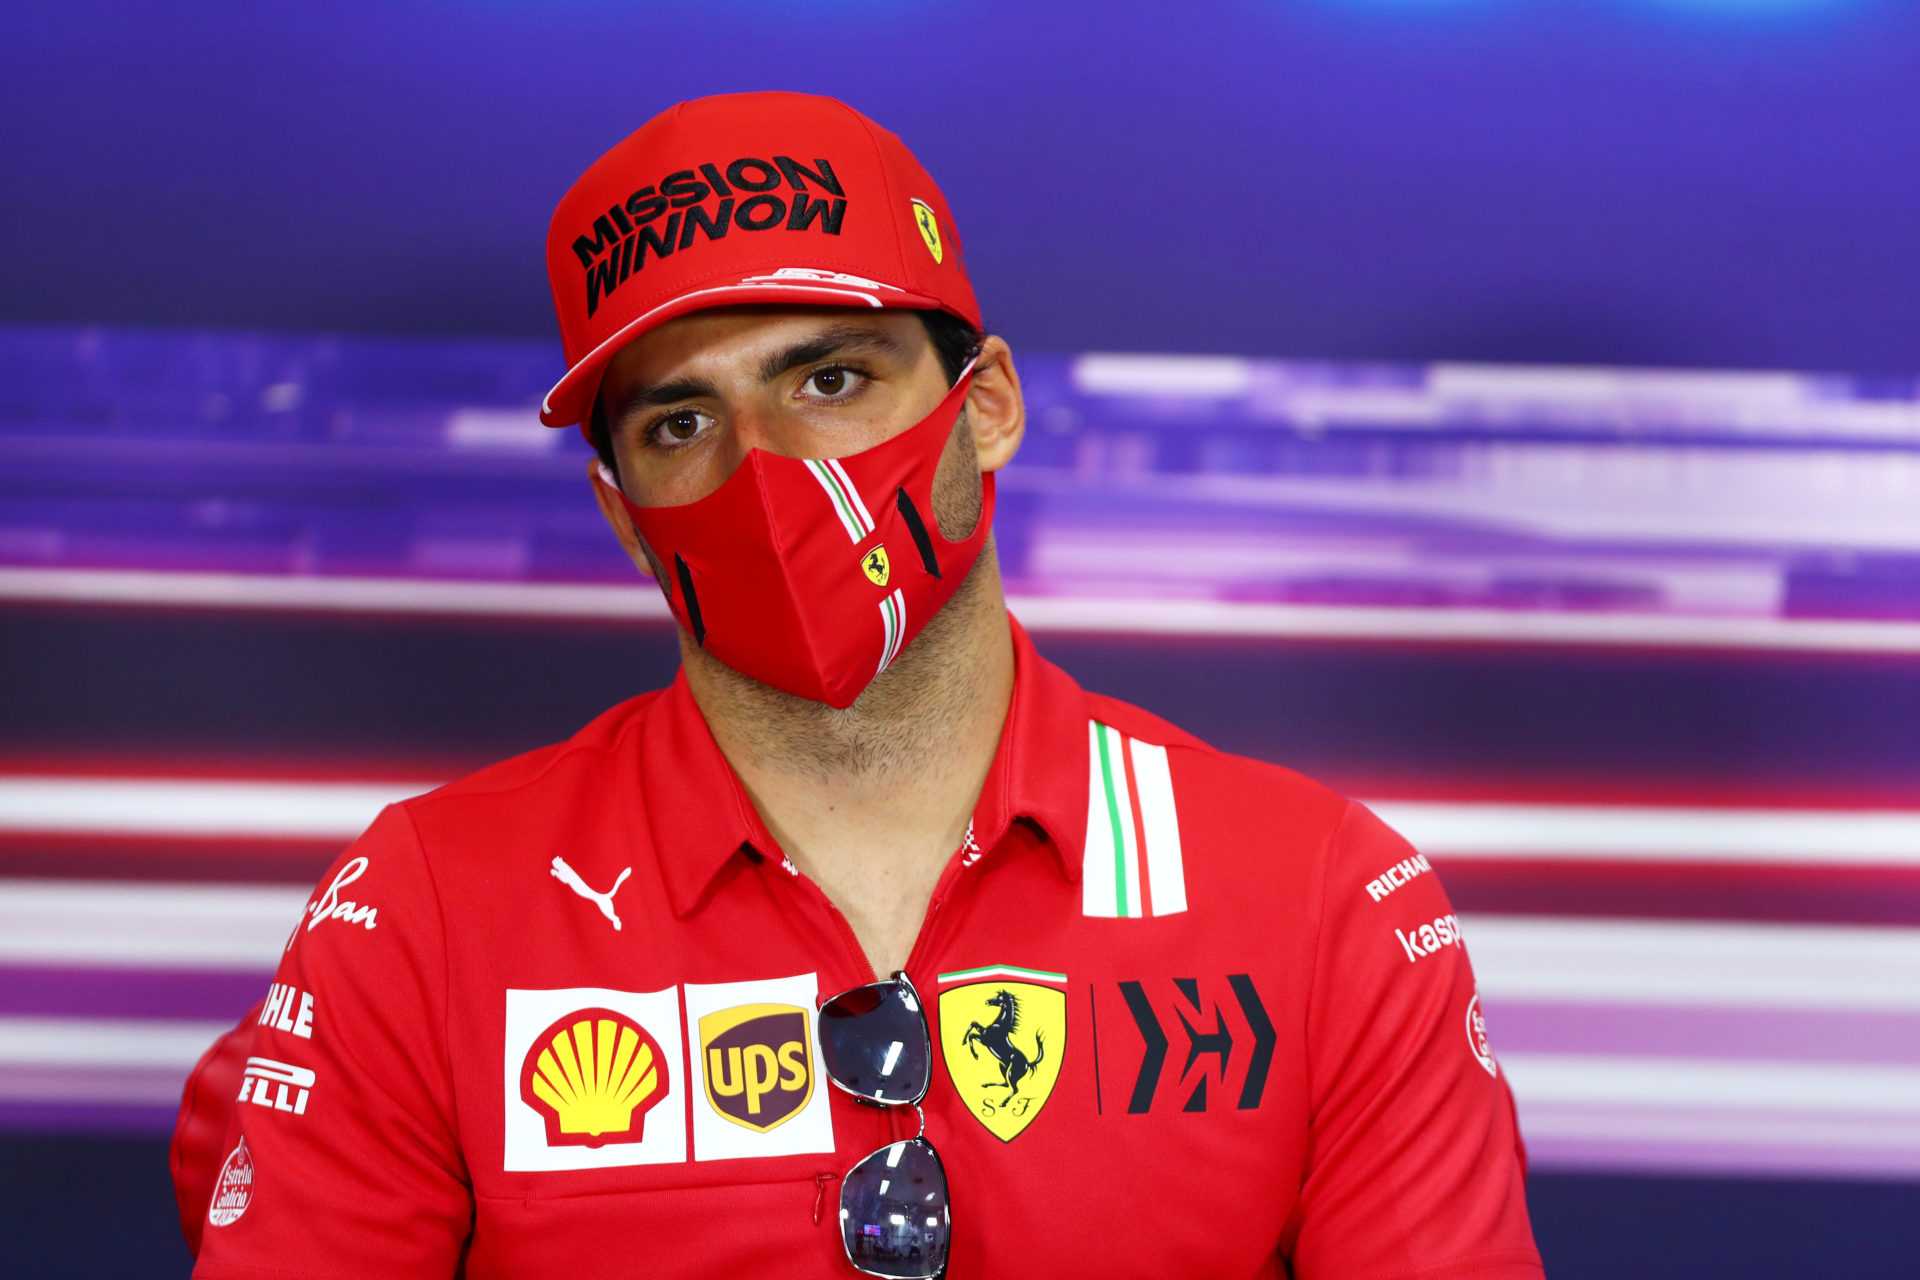 Pilote Ferrari Carlos Sainz lors de la conférence de presse